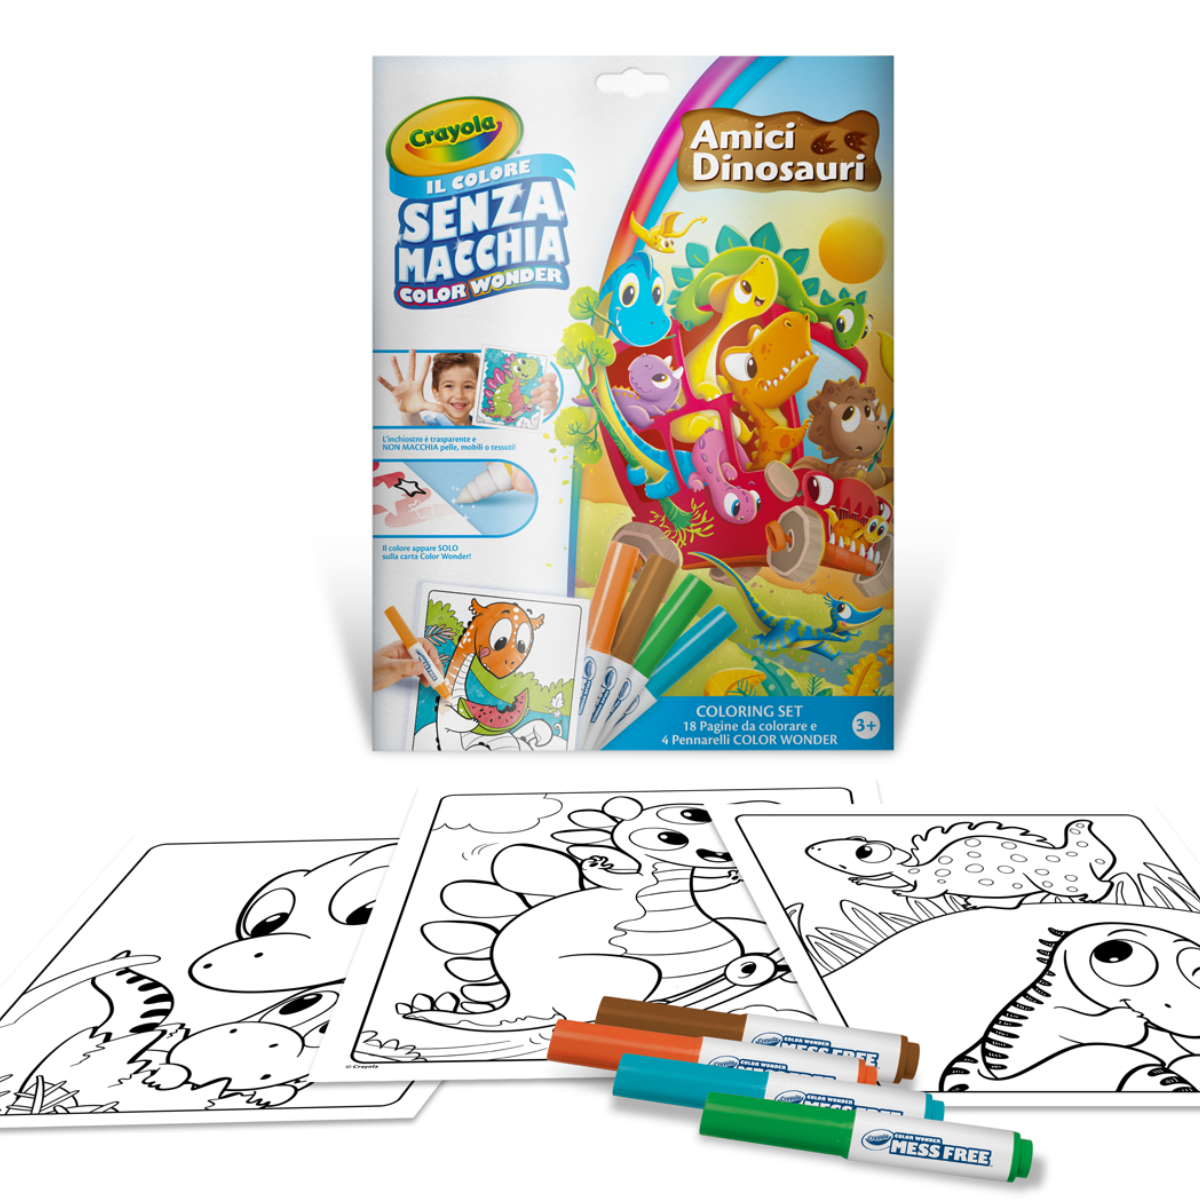 Crayola - color wonder, coloring set con 18 pagine da colorare e 4 pennarelli senza macchia, soggetto amici dinosauri, attività creativa per bambini, età 3, 4, 5 anni - CRAYOLA